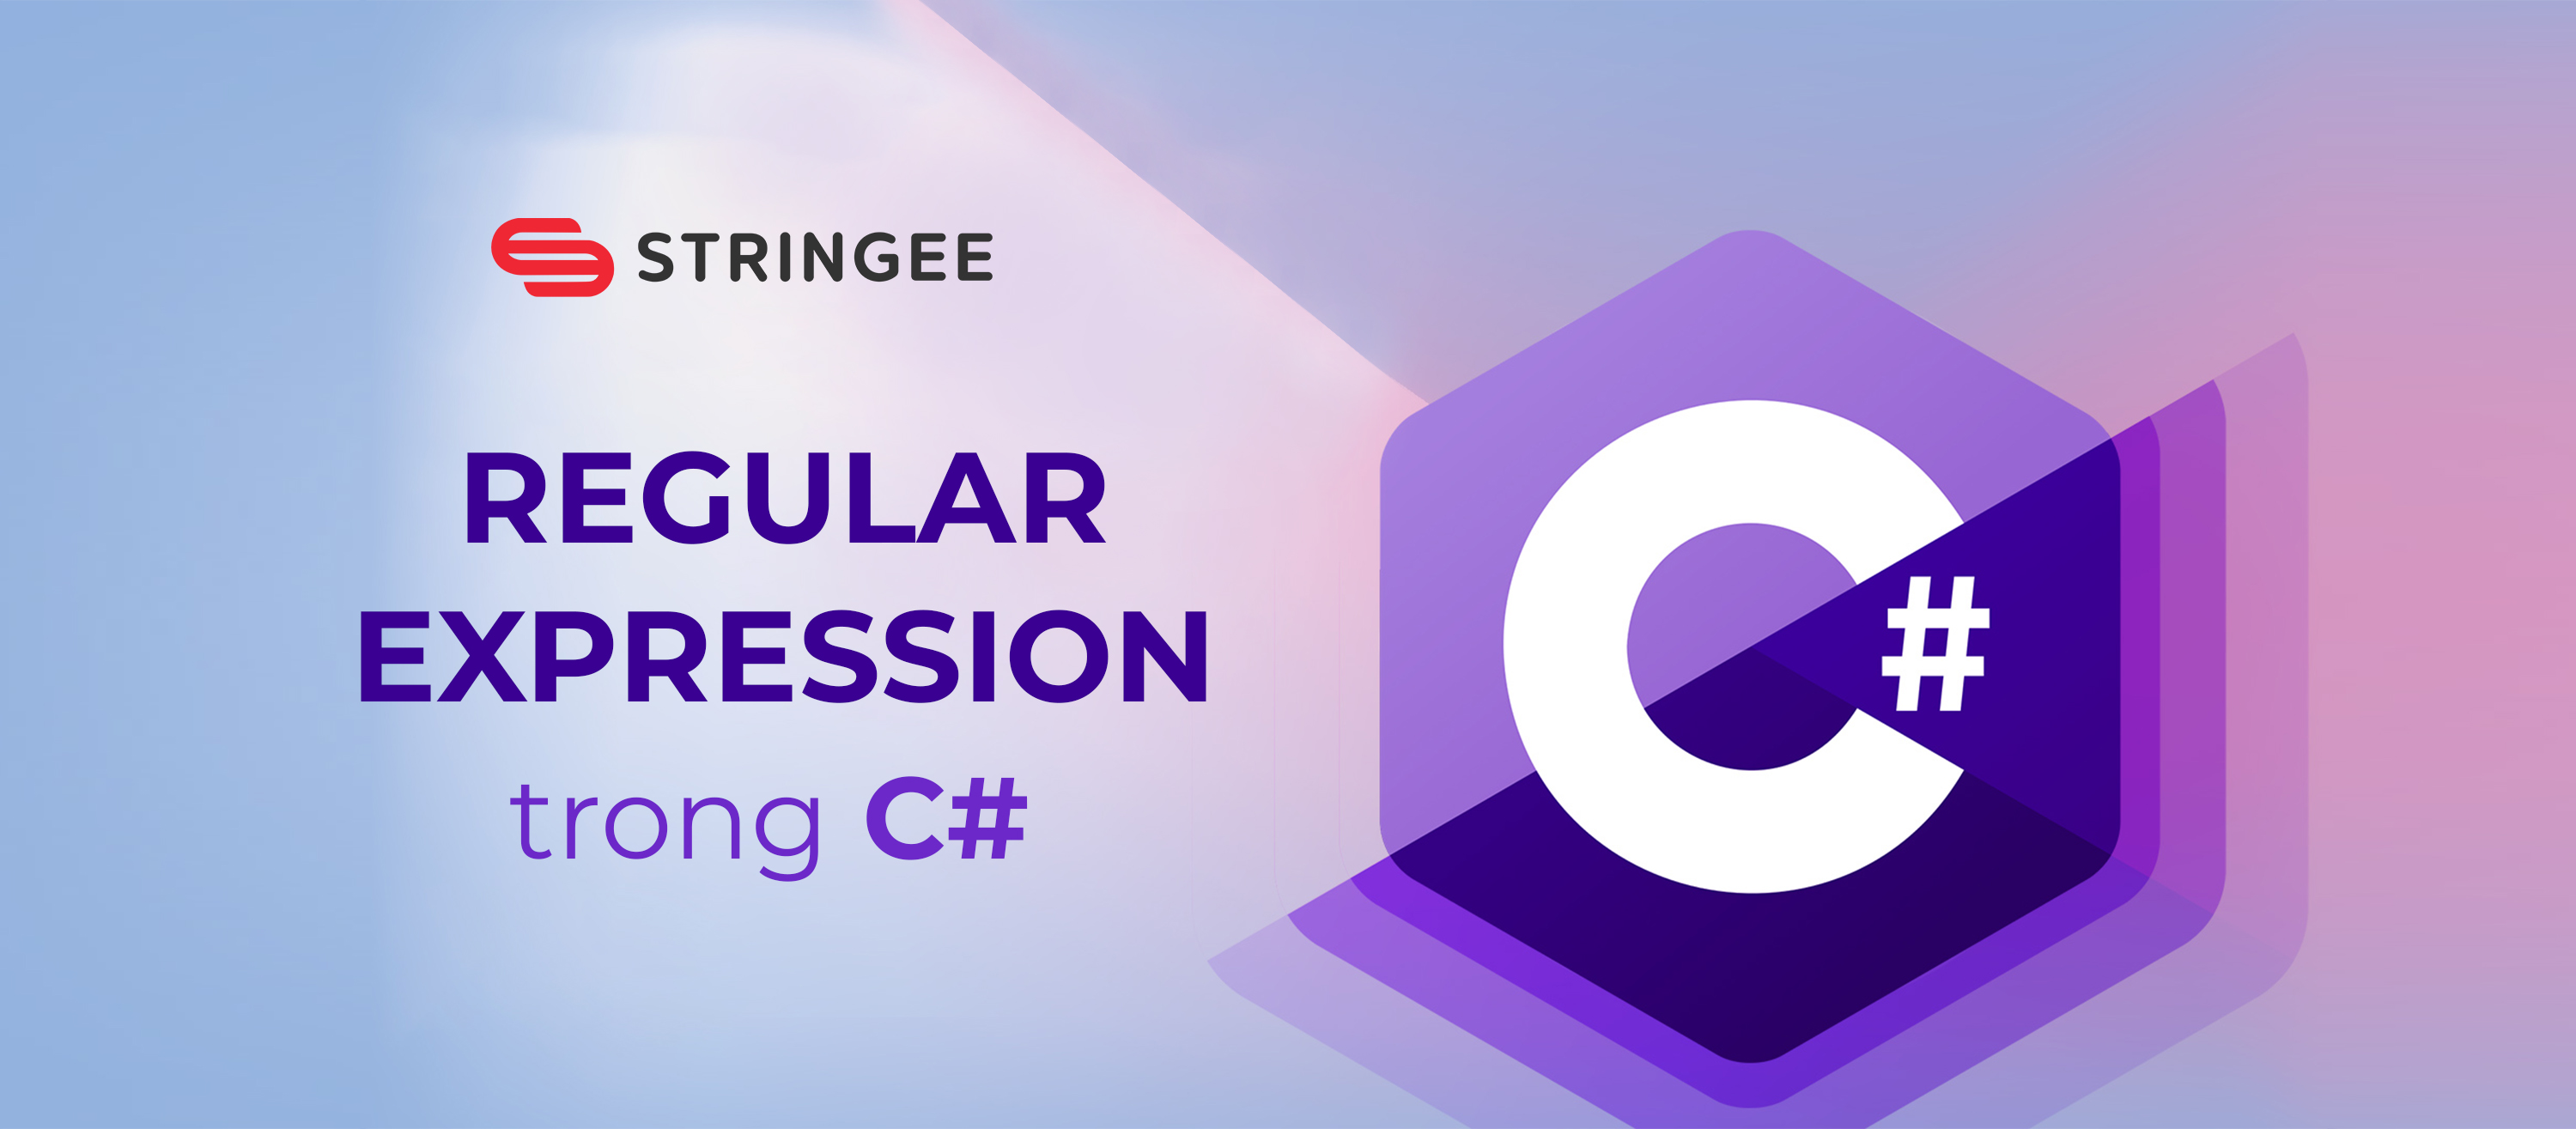 Regular Expressions (Biểu thức chính quy) trong C#: Chìa khóa chinh phục sức mạnh xử lý văn bản